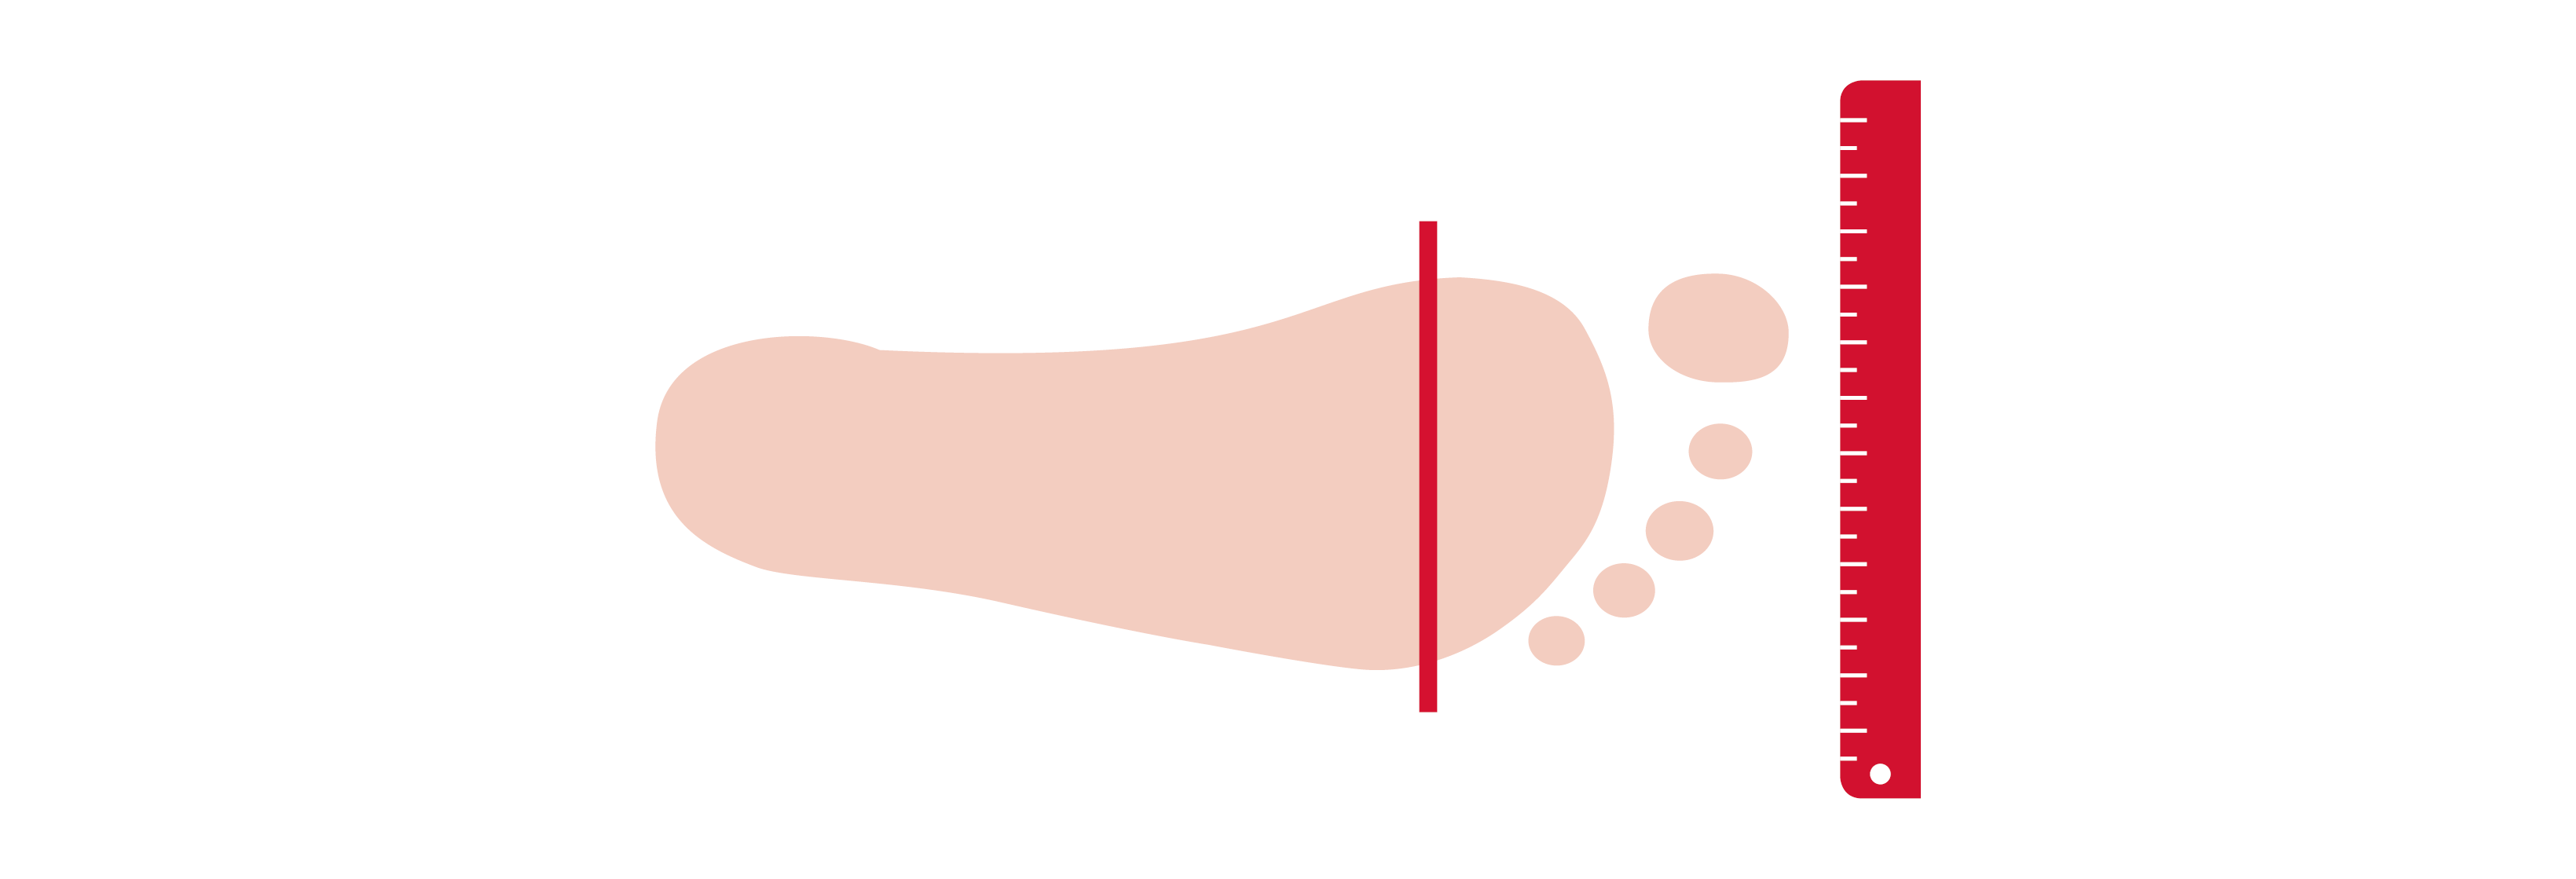 Mesure du pied Chaussures Taille Mesurer la jauge Adultes Pied 8-52 Yards